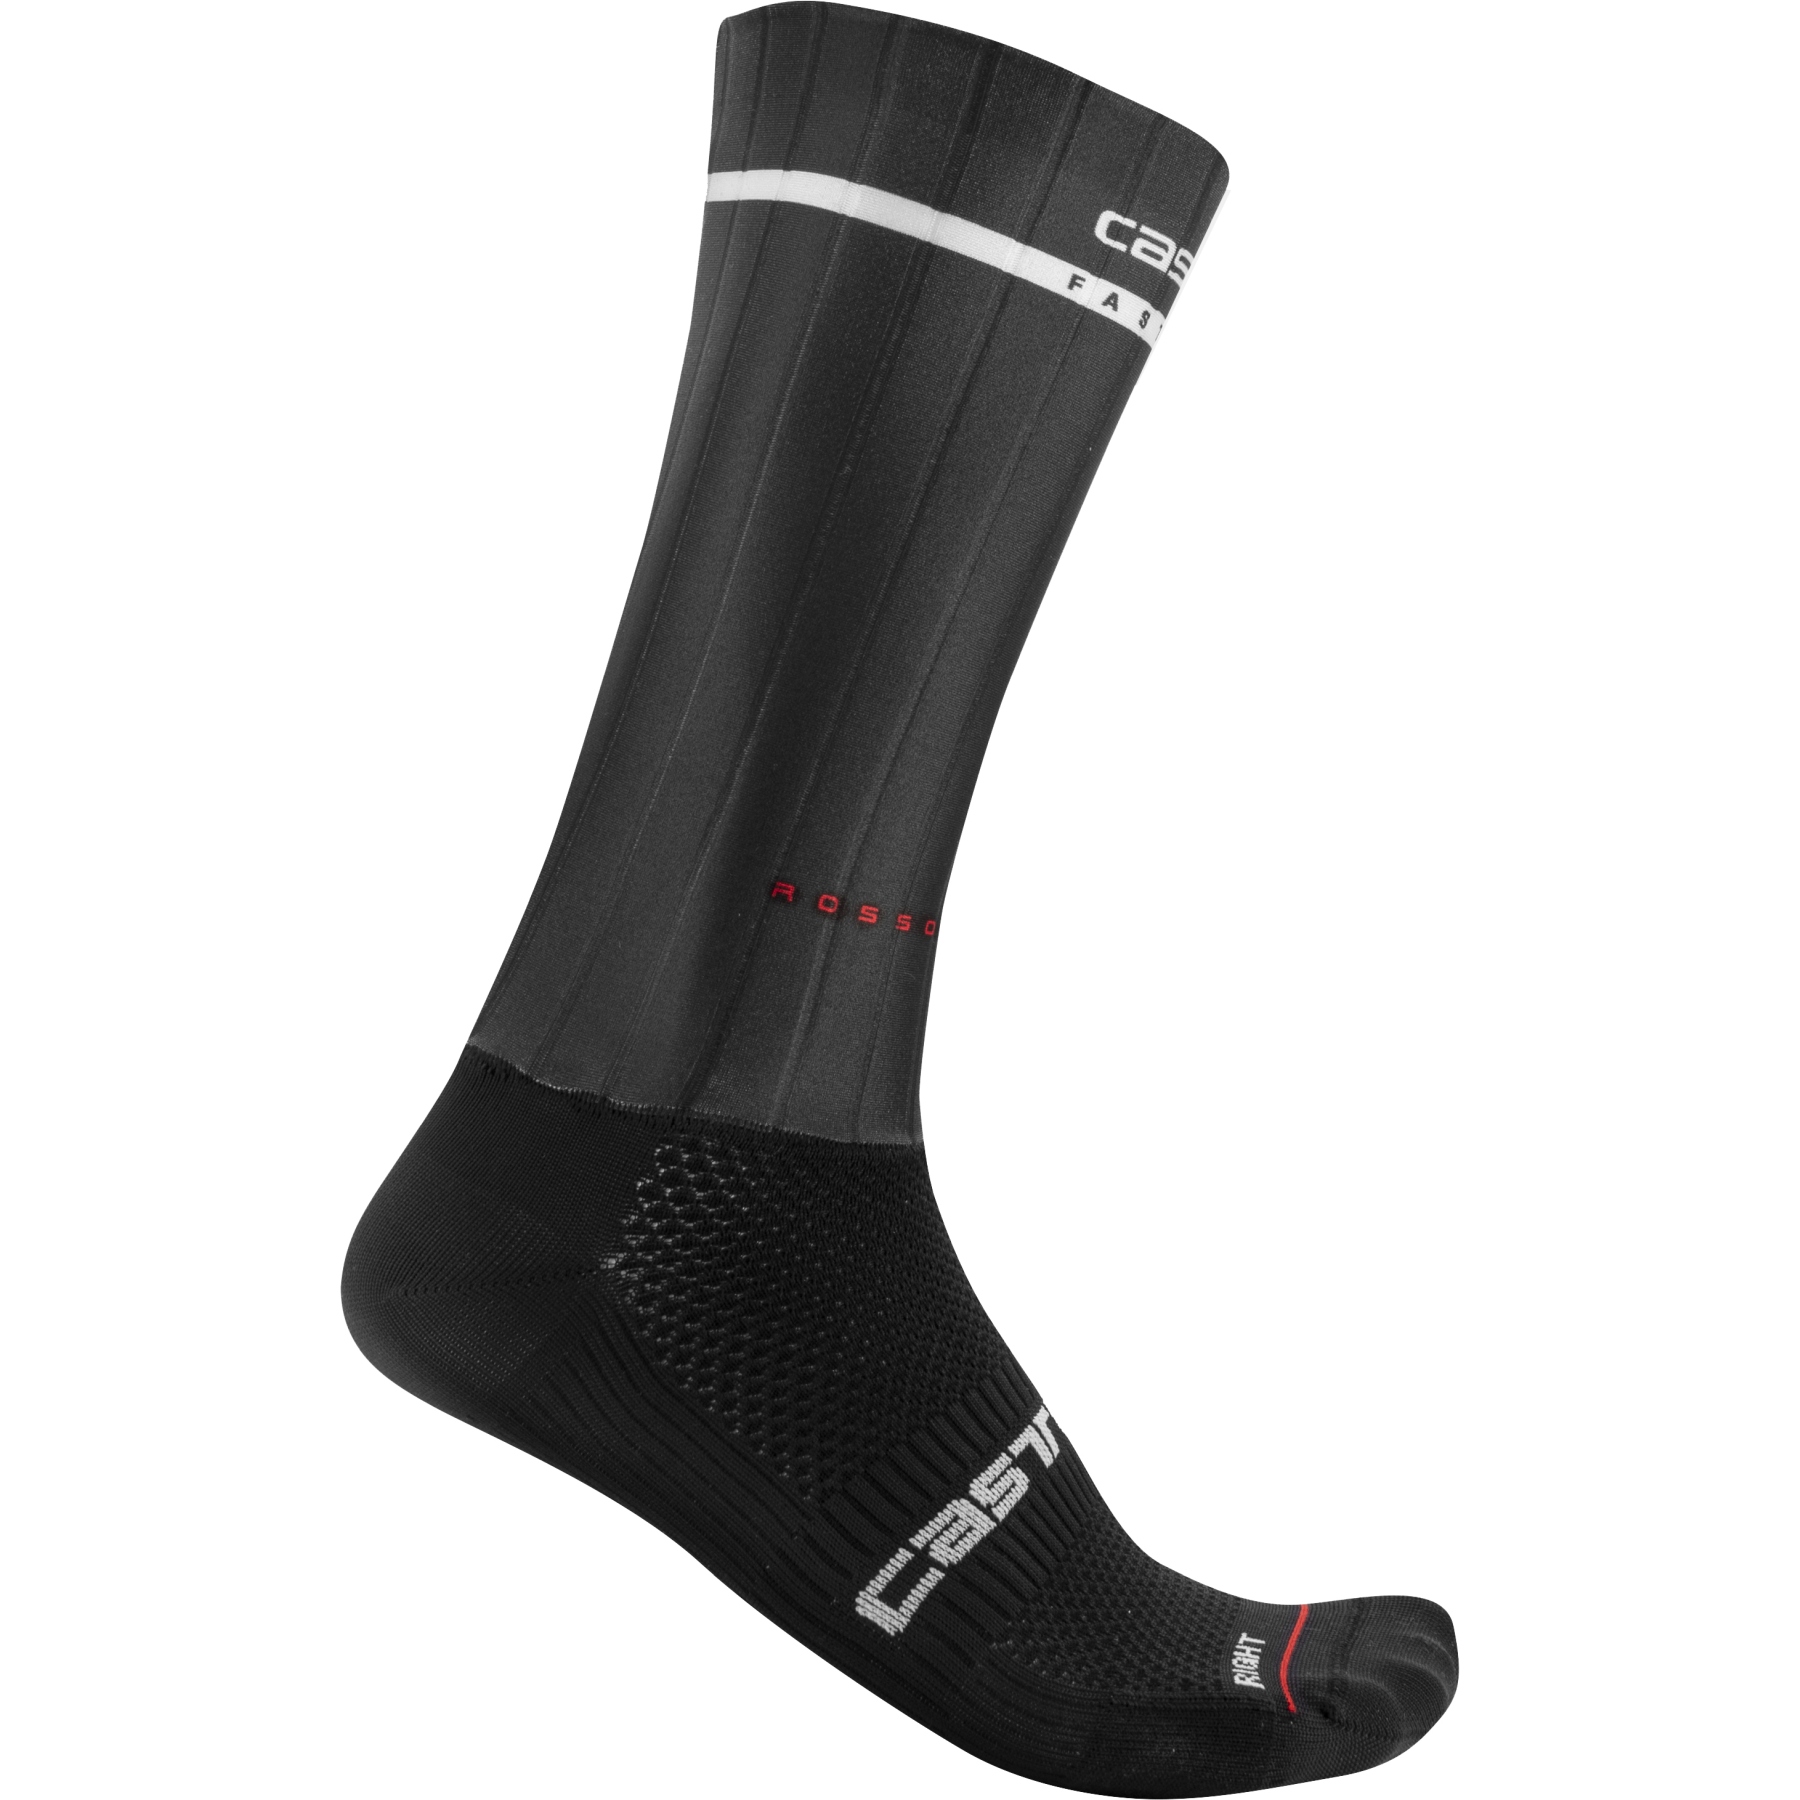 Produktbild von Castelli Fast Feet 2 Socken - schwarz 010